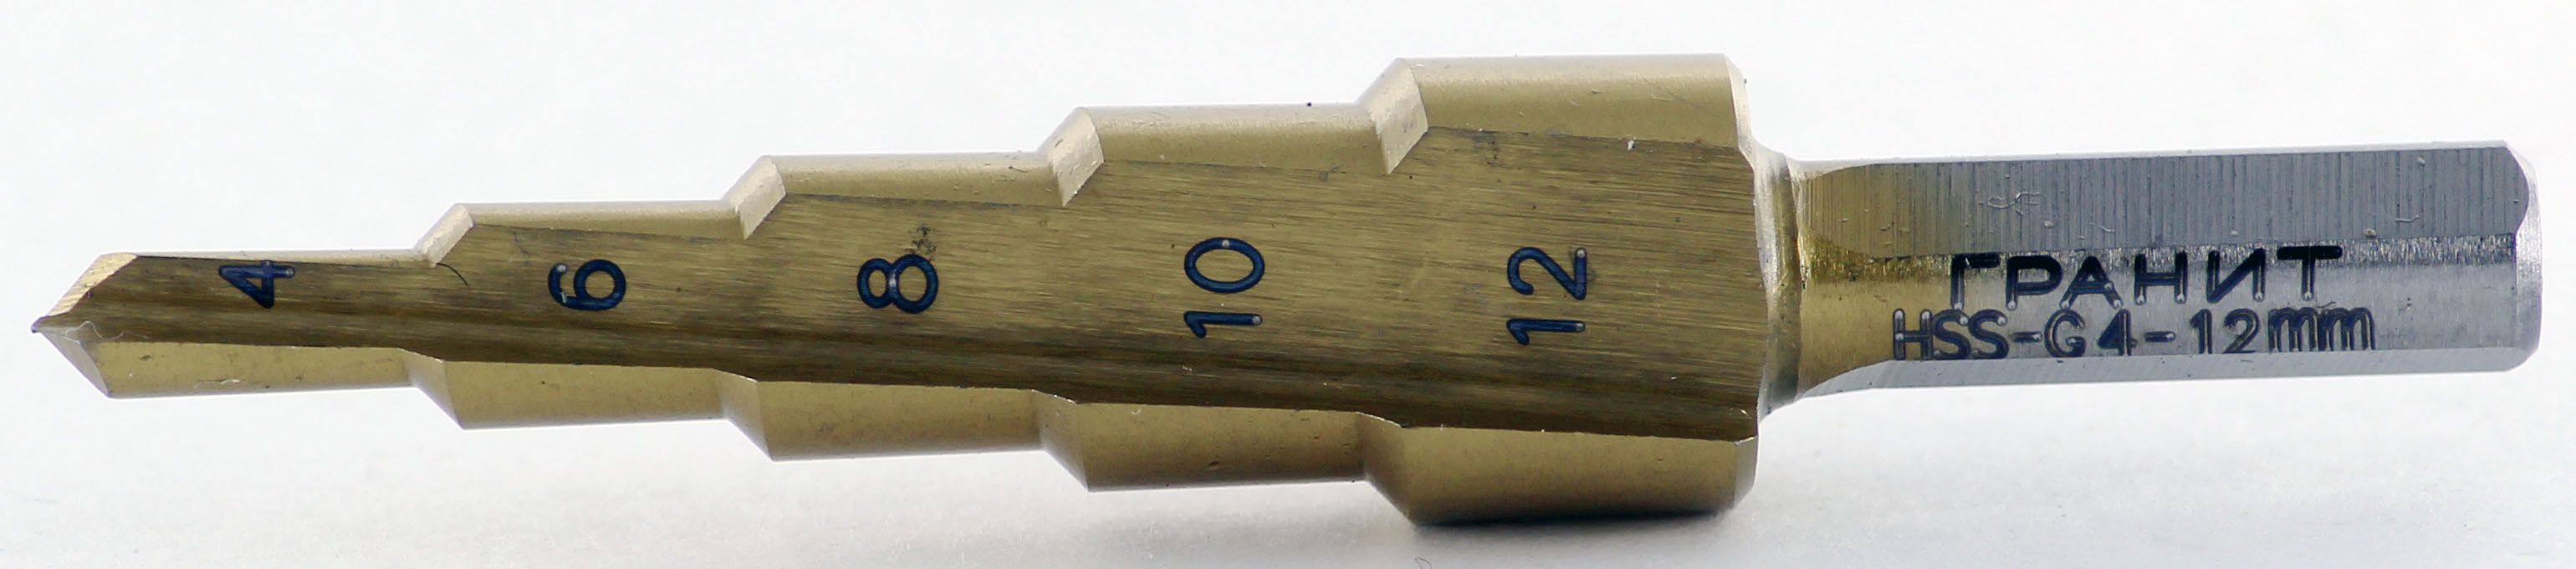   ДоброСтрой Сверло ступенчатое Гранит 4-12 мм